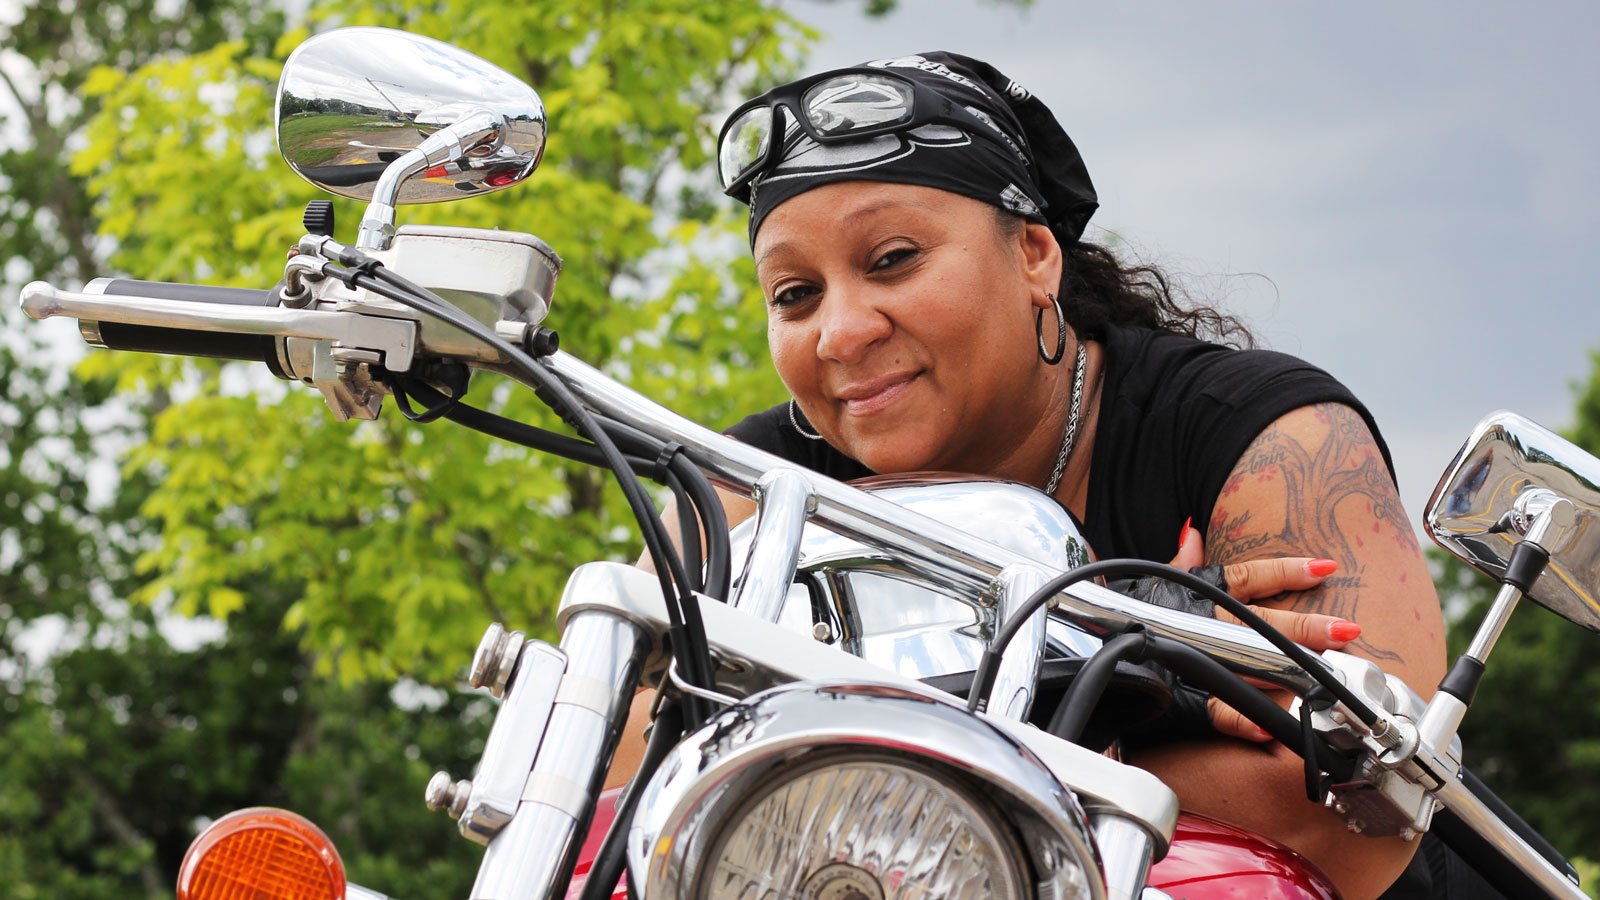 Noemi Martinez posing on her motorcycle